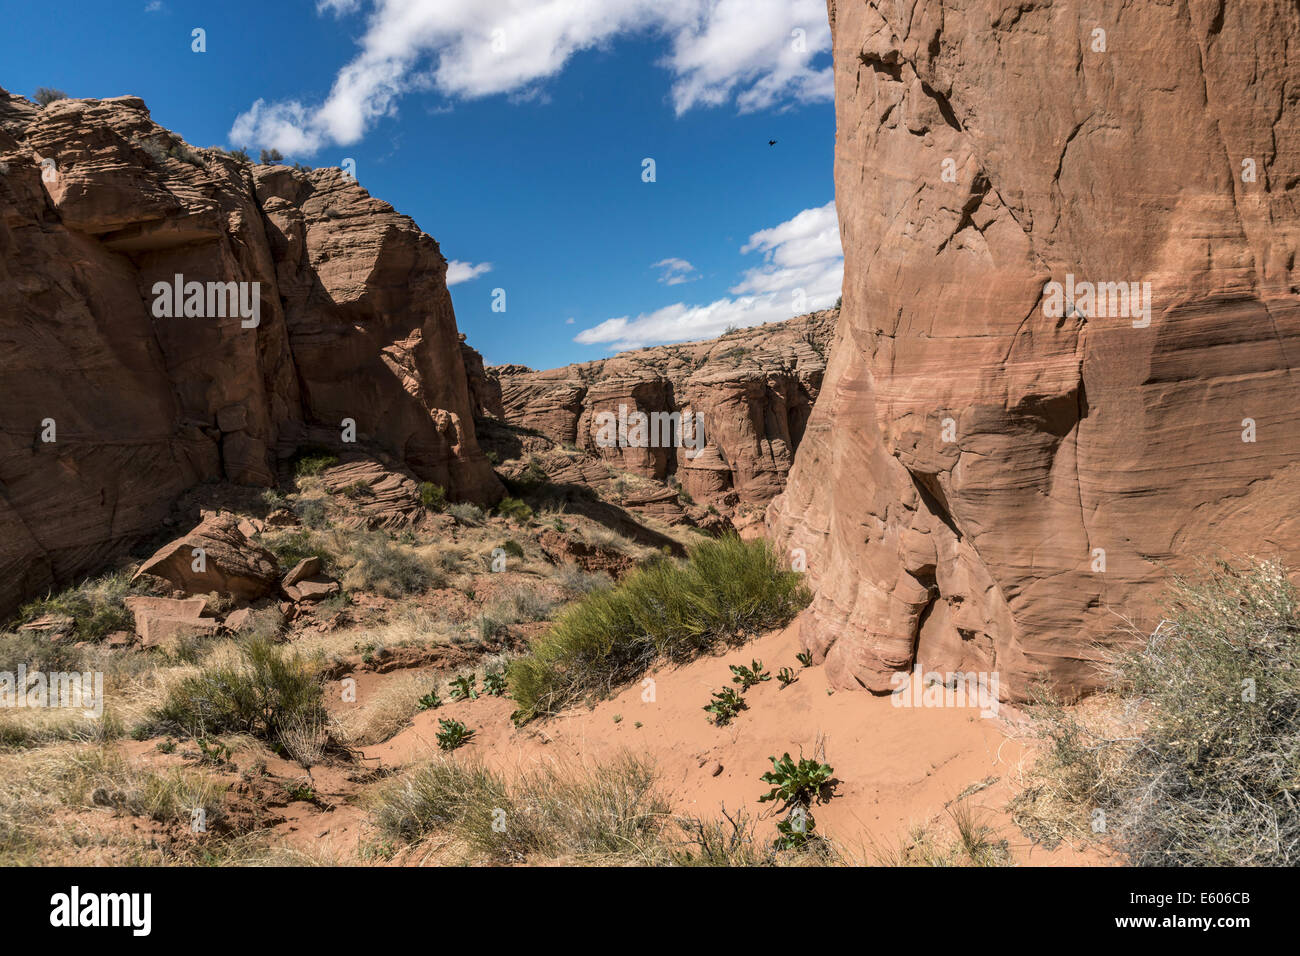 Regardant vers le bas à l'entrée de Canyon X, Réserve Navajo, près de Page, AZ Banque D'Images